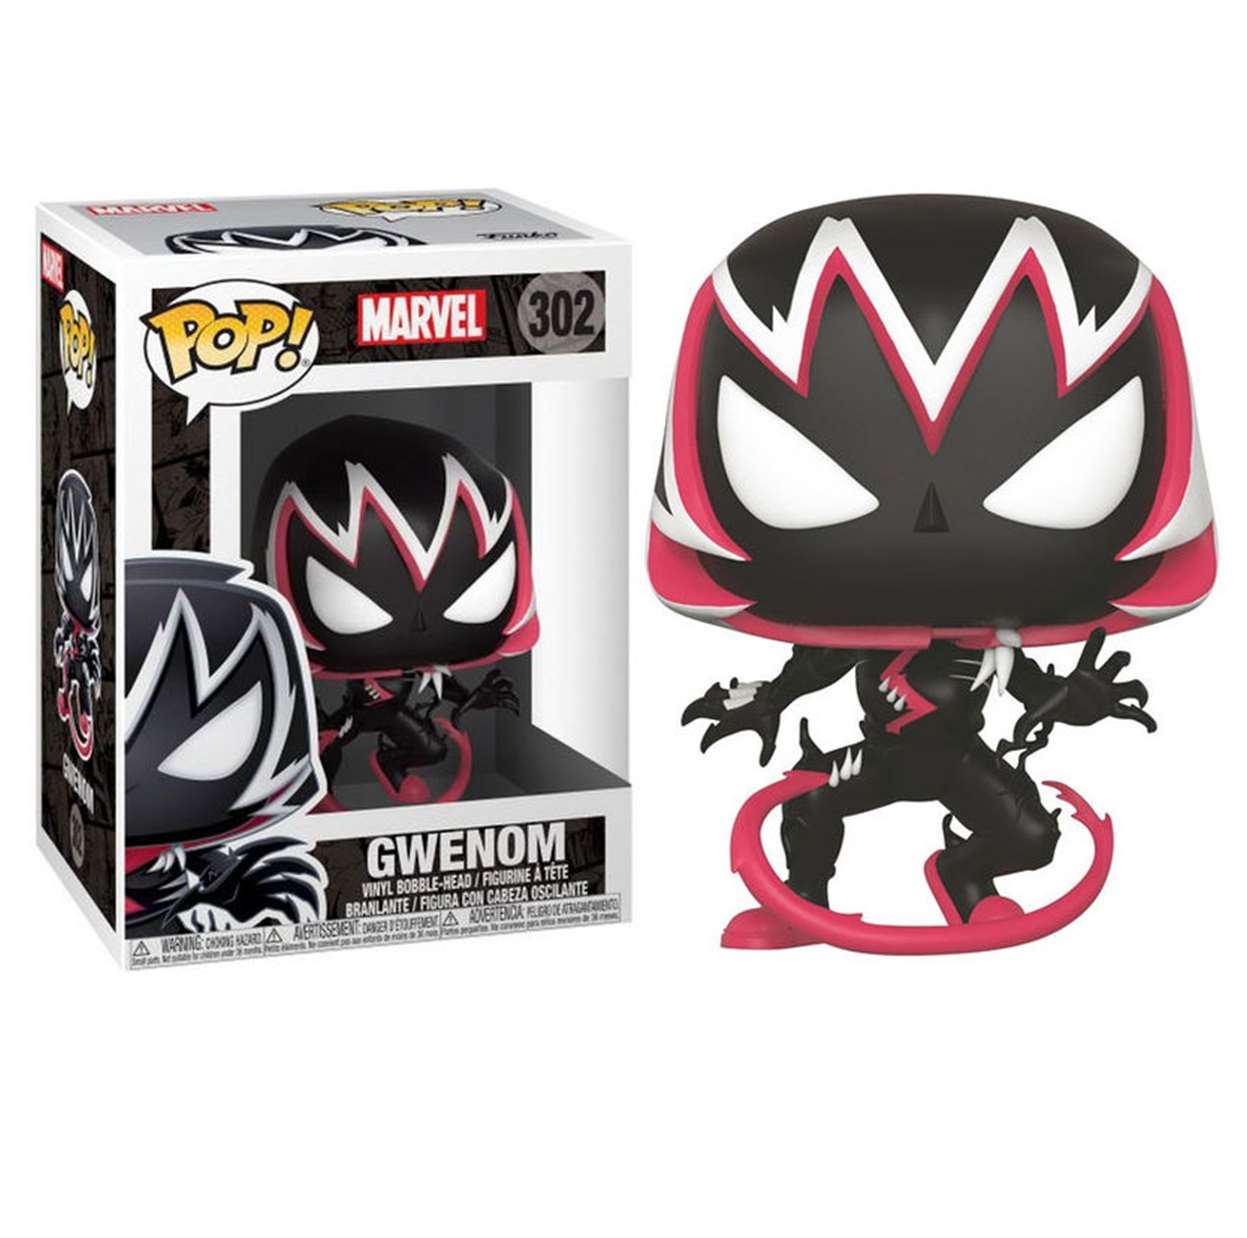 Gwenom #302 Figura Venomized Marvel Venom Funko Pop!